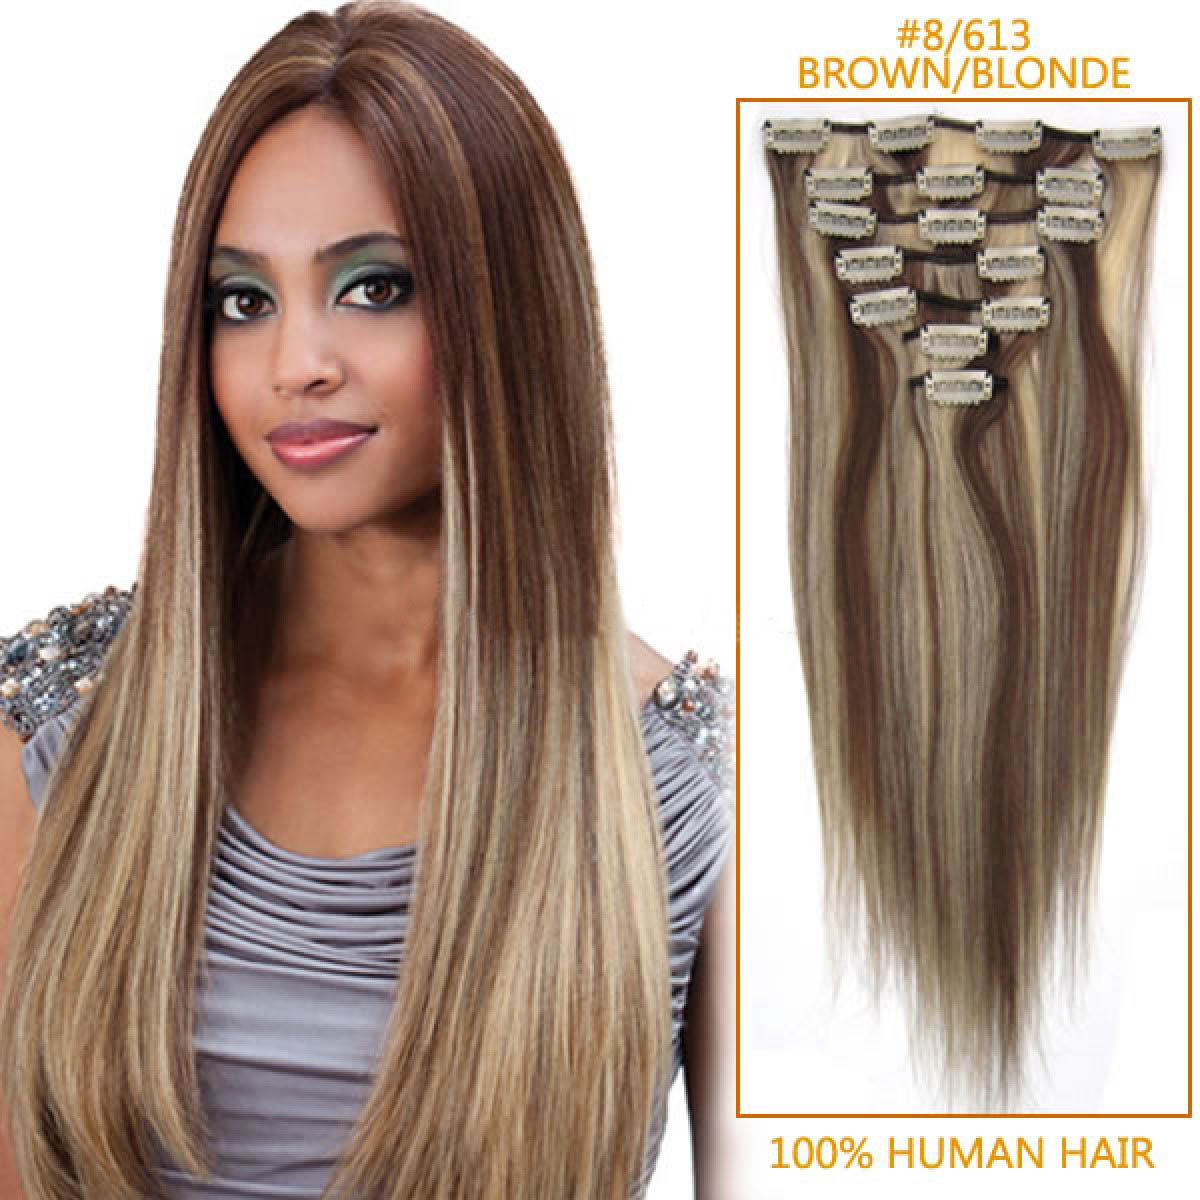 26 inch hair extensions human hair